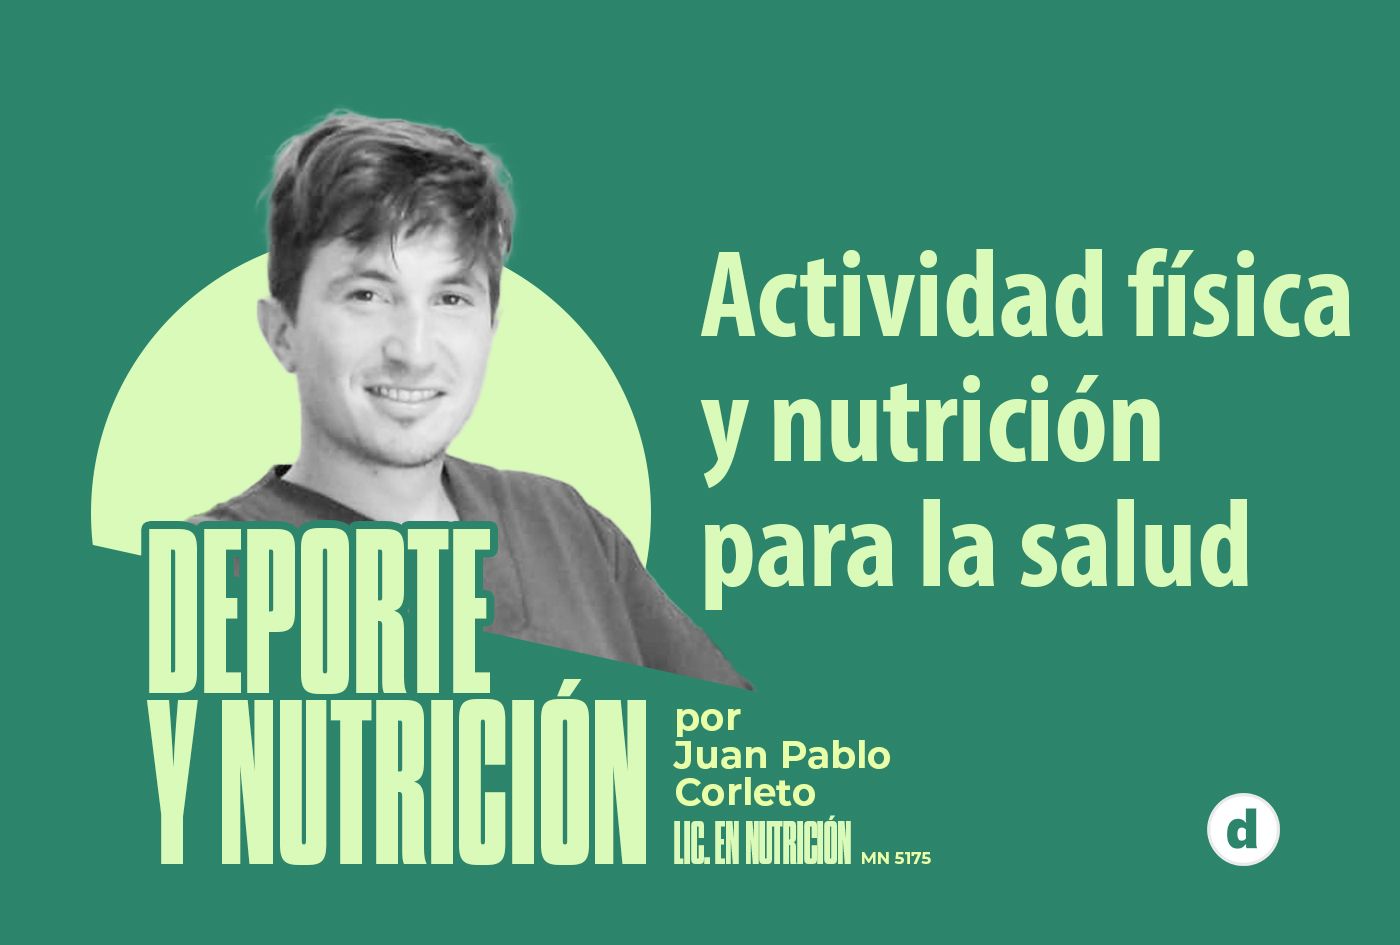 La columna de Juan Pablo Corleto: “Actividad física y nutrición para la salud”